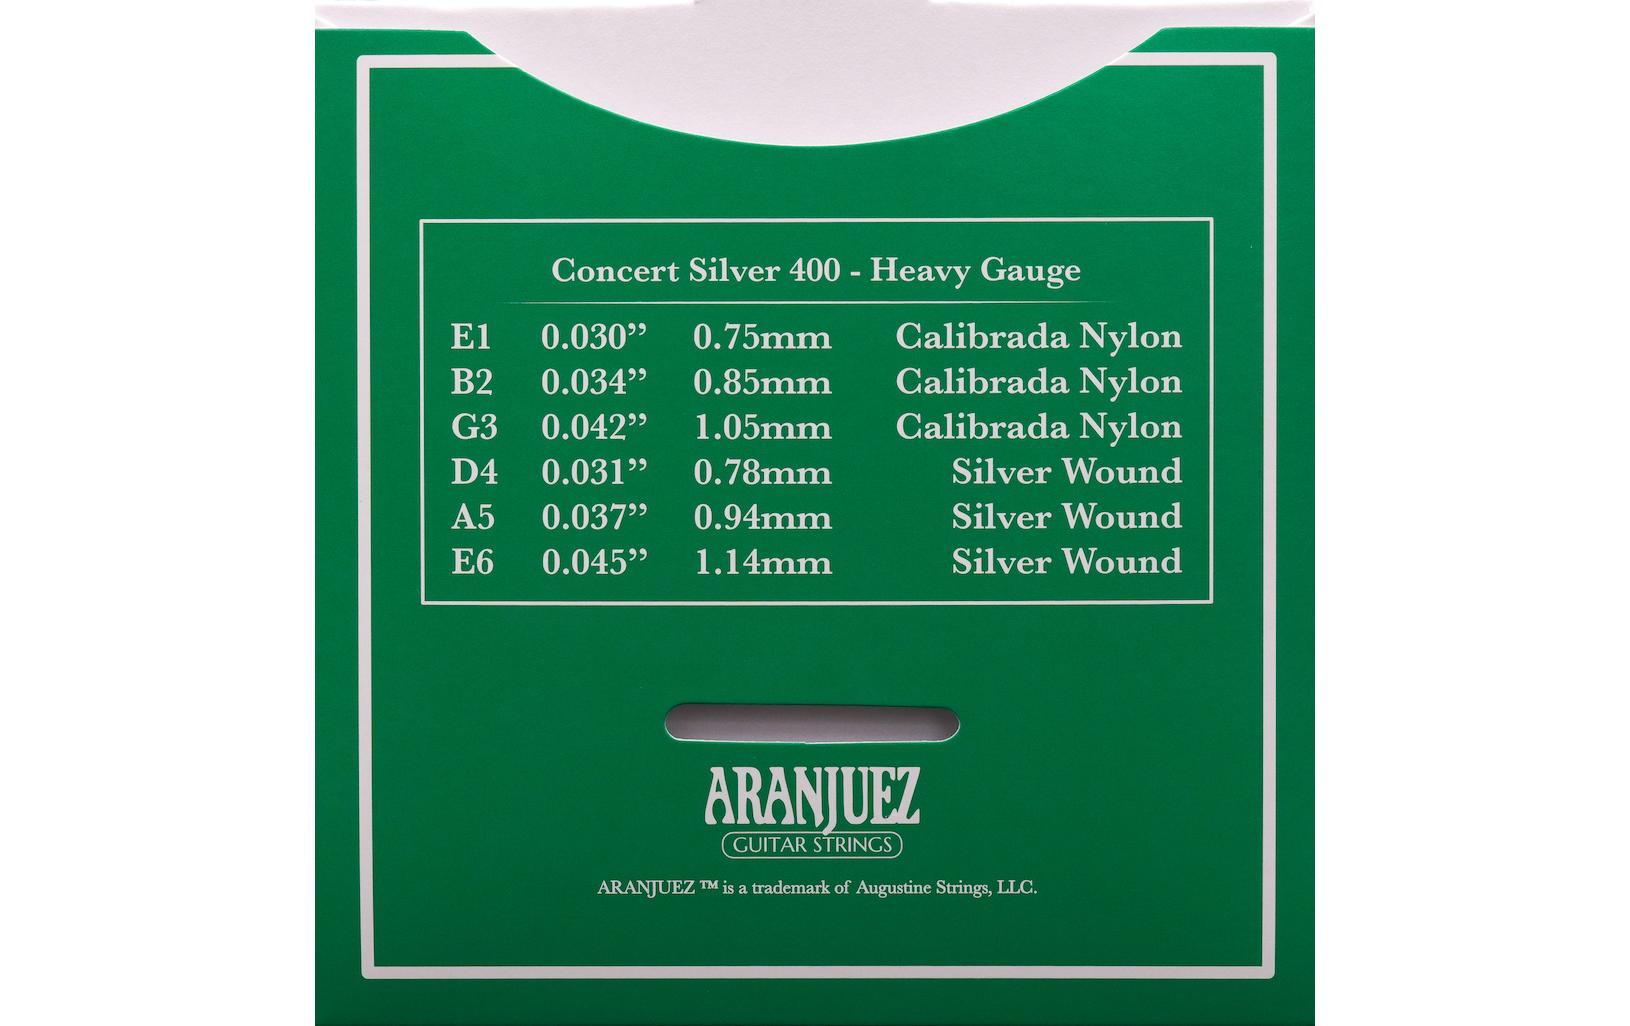 Aranjuez Gitarrensaiten Concert Silver 400 – Heavy Gauge